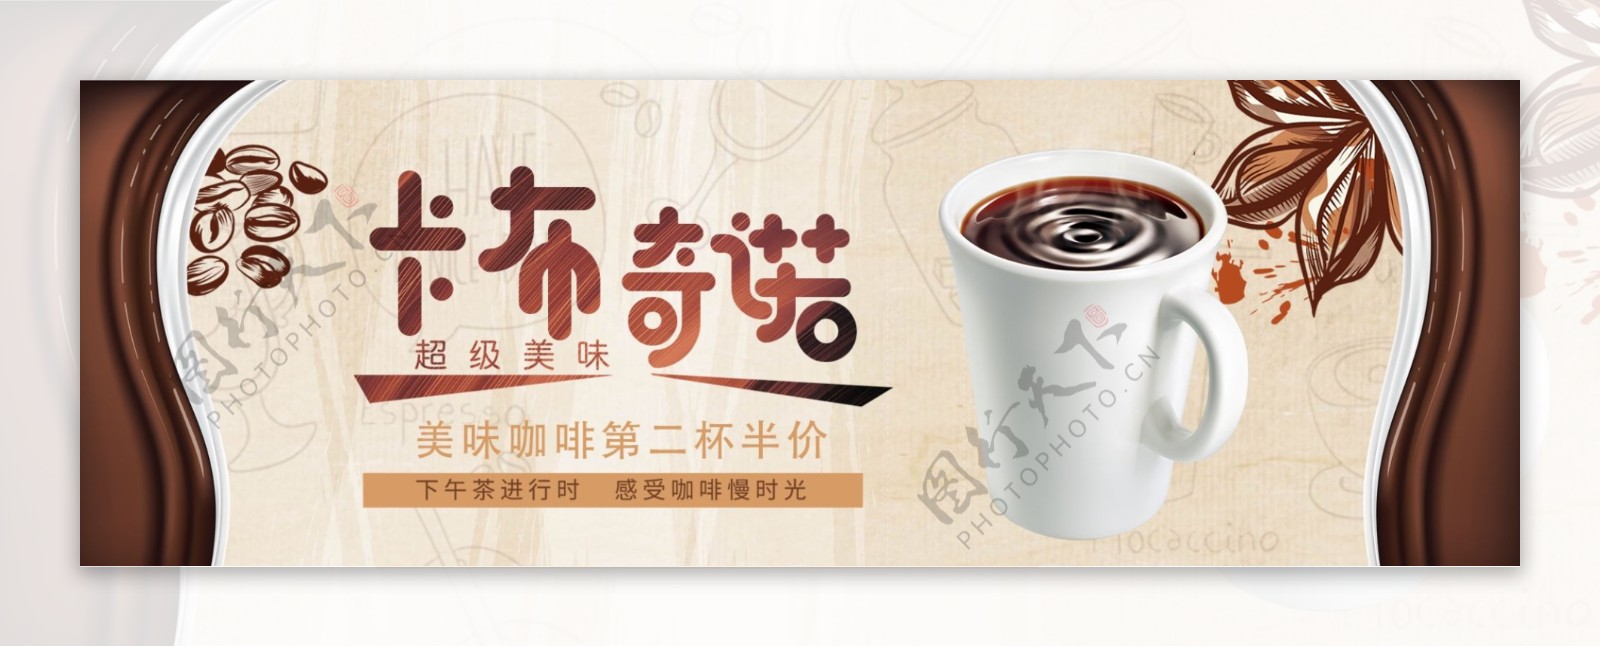 棕色温馨咖啡奶茶咖啡节电商banner